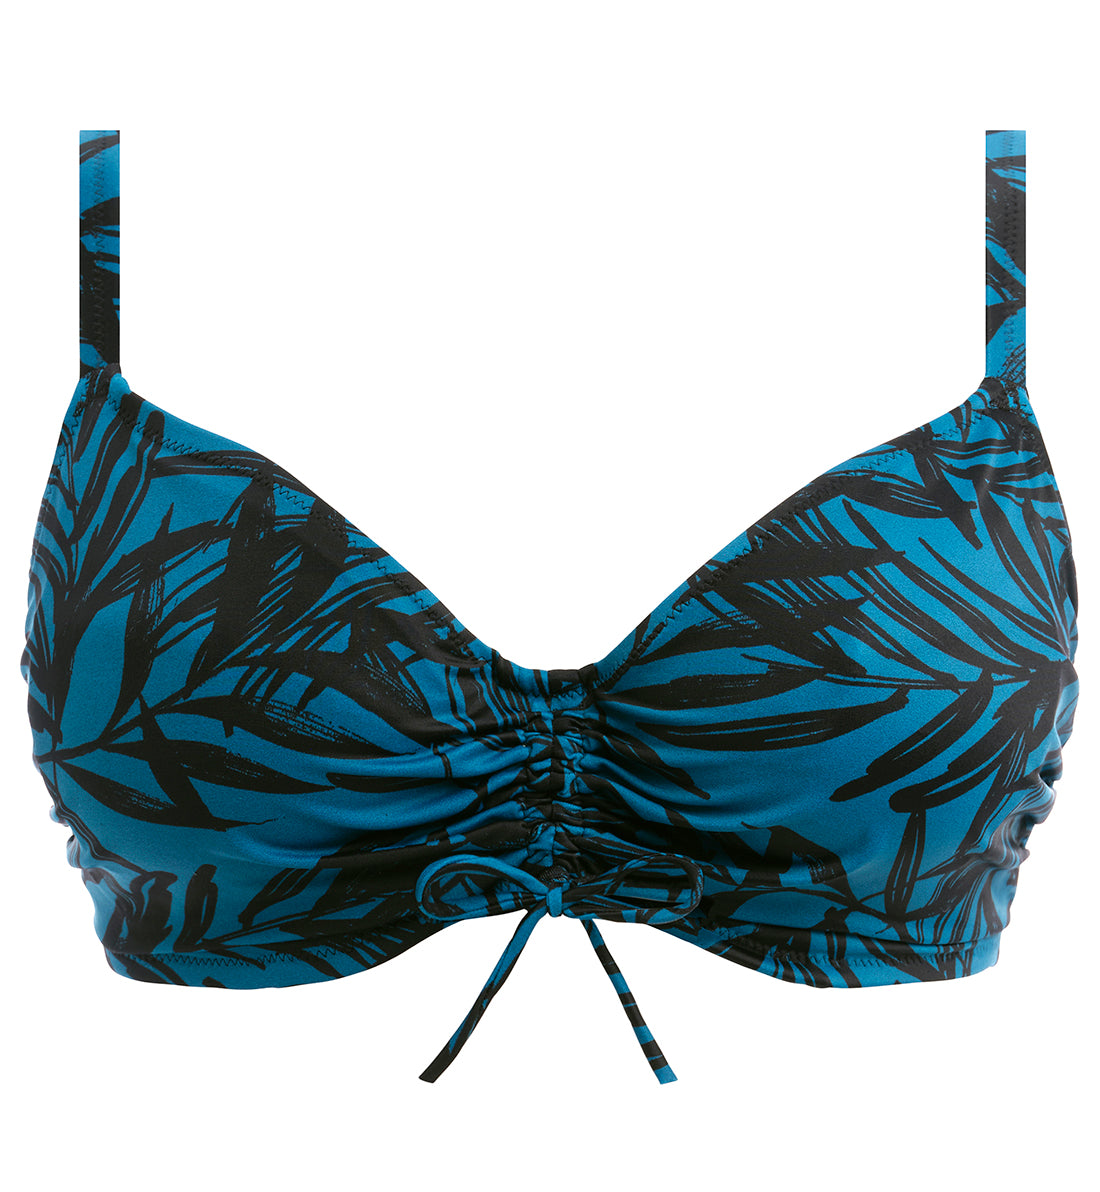 Fantasie Palmetto Bay Concealed Underwire Bralette Bikini Top (502014),30DD,Zen Blue - Zen Blue,30DD